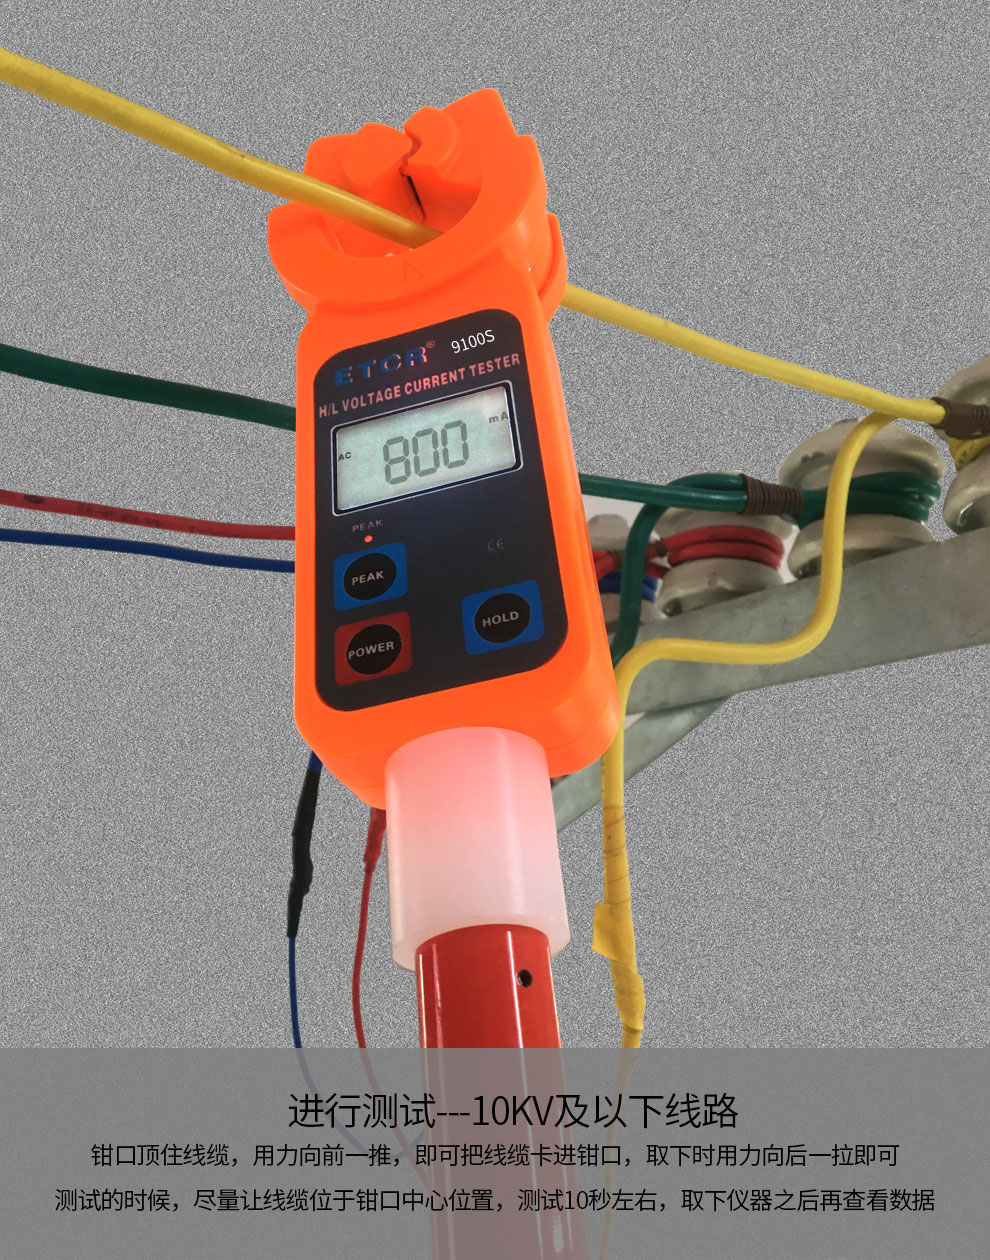 铱泰 ETCR9100C 氧化锌避雷器测试仪